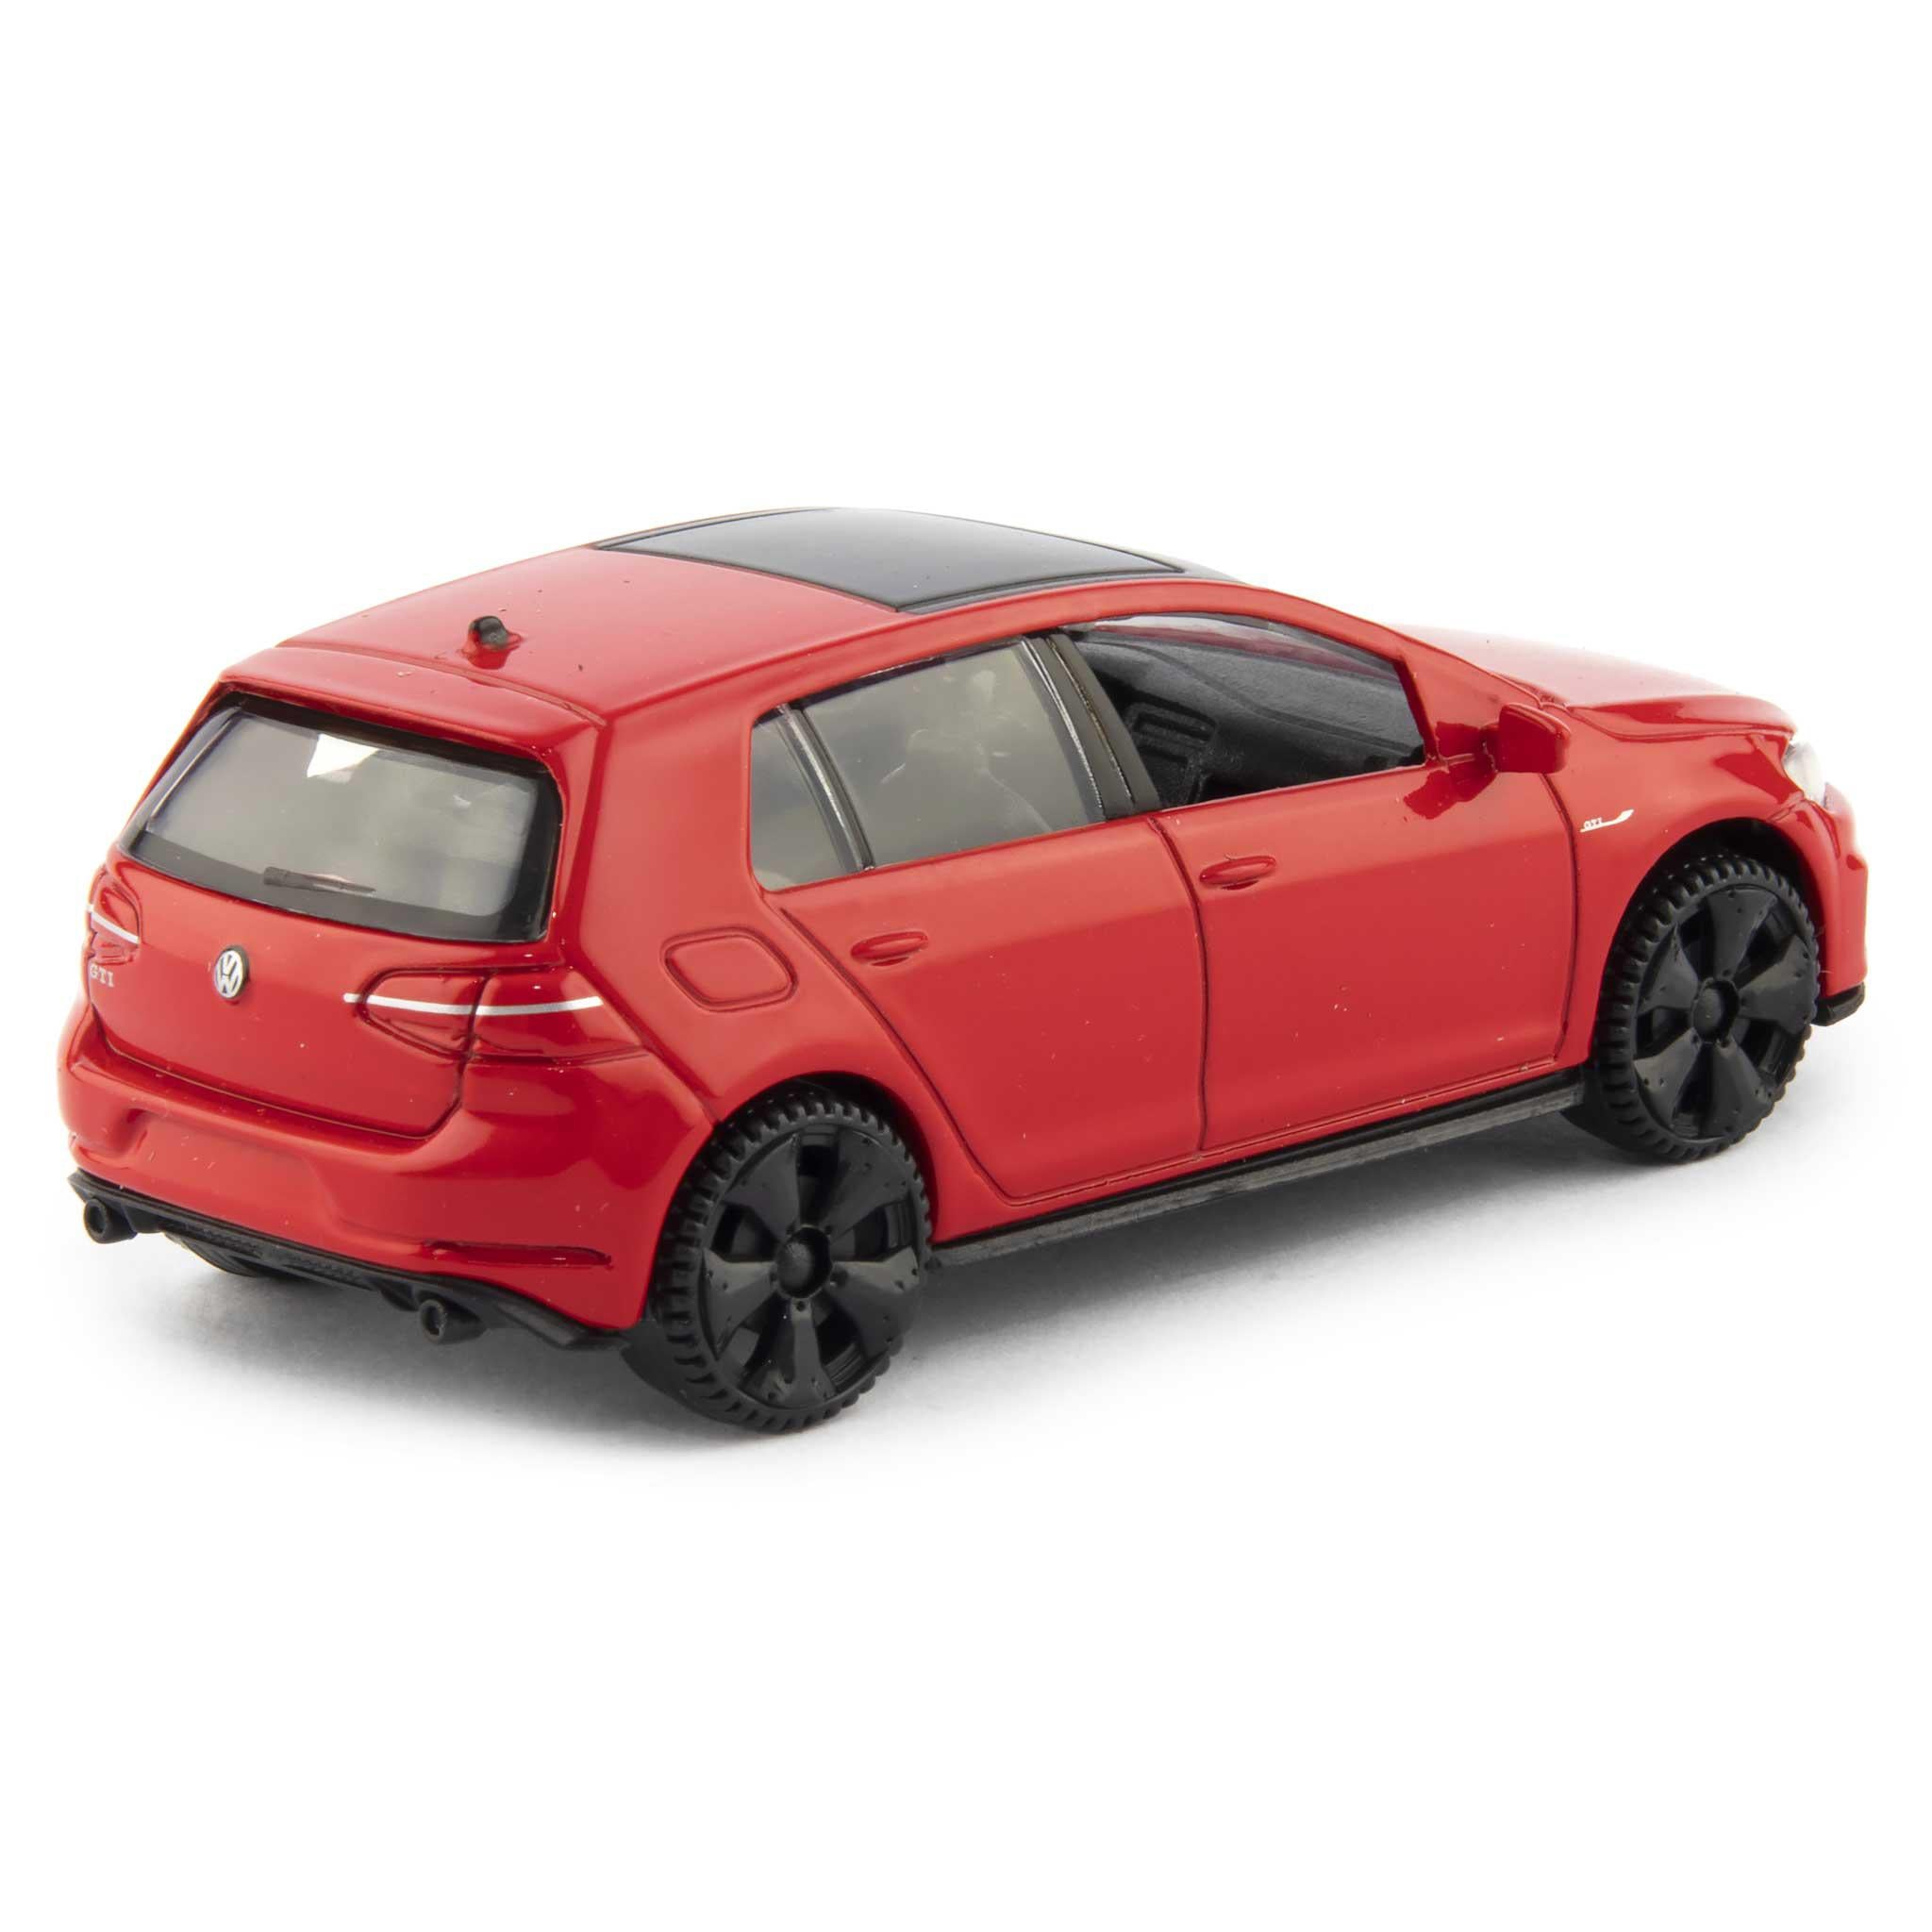 Volkswagen Golf GTi Diecast Toy Car red - 1:43 Scale